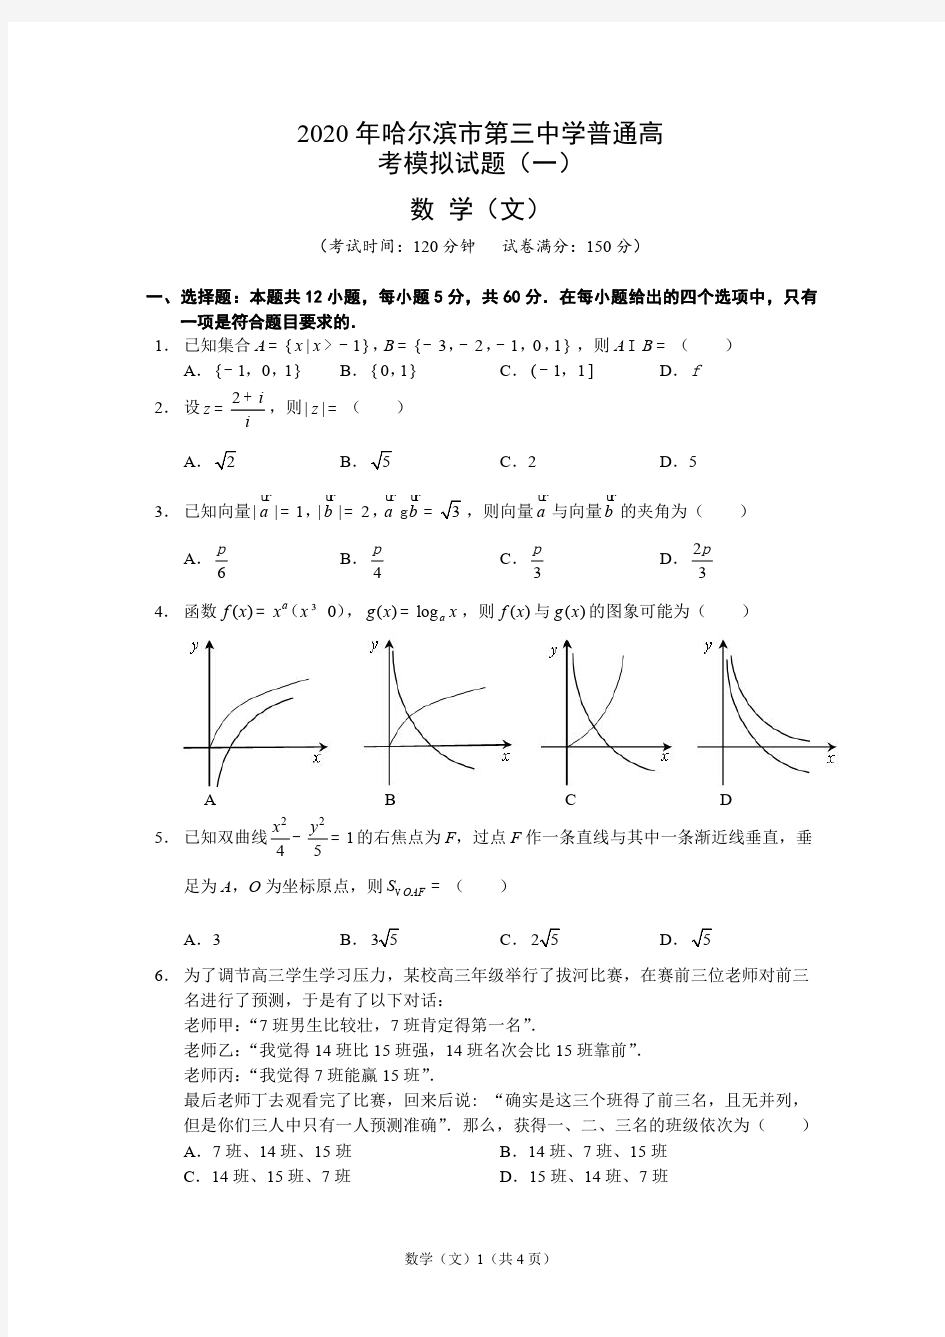 【文数】2020年哈三中普通高考模拟试卷(一)文科数学_20200331_153537